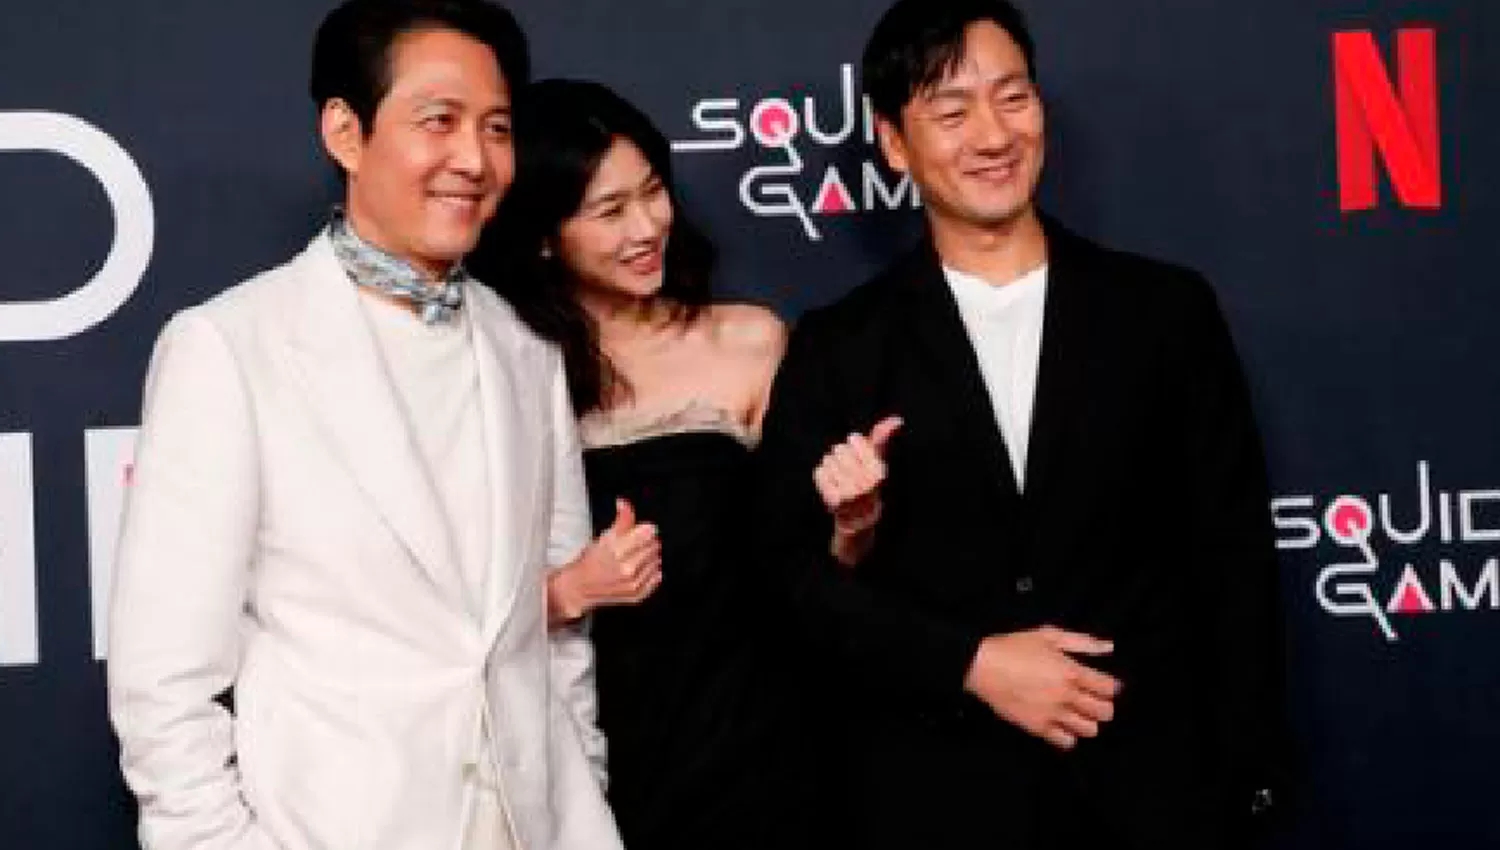 ÉXITO MUNDIAL. Los actores de El juego del calamar (Squid game) Lee Jung-jae, Hoyeon Jung y Park Hae-soo durante un evento en Los Ángeles, Estados Unidos.